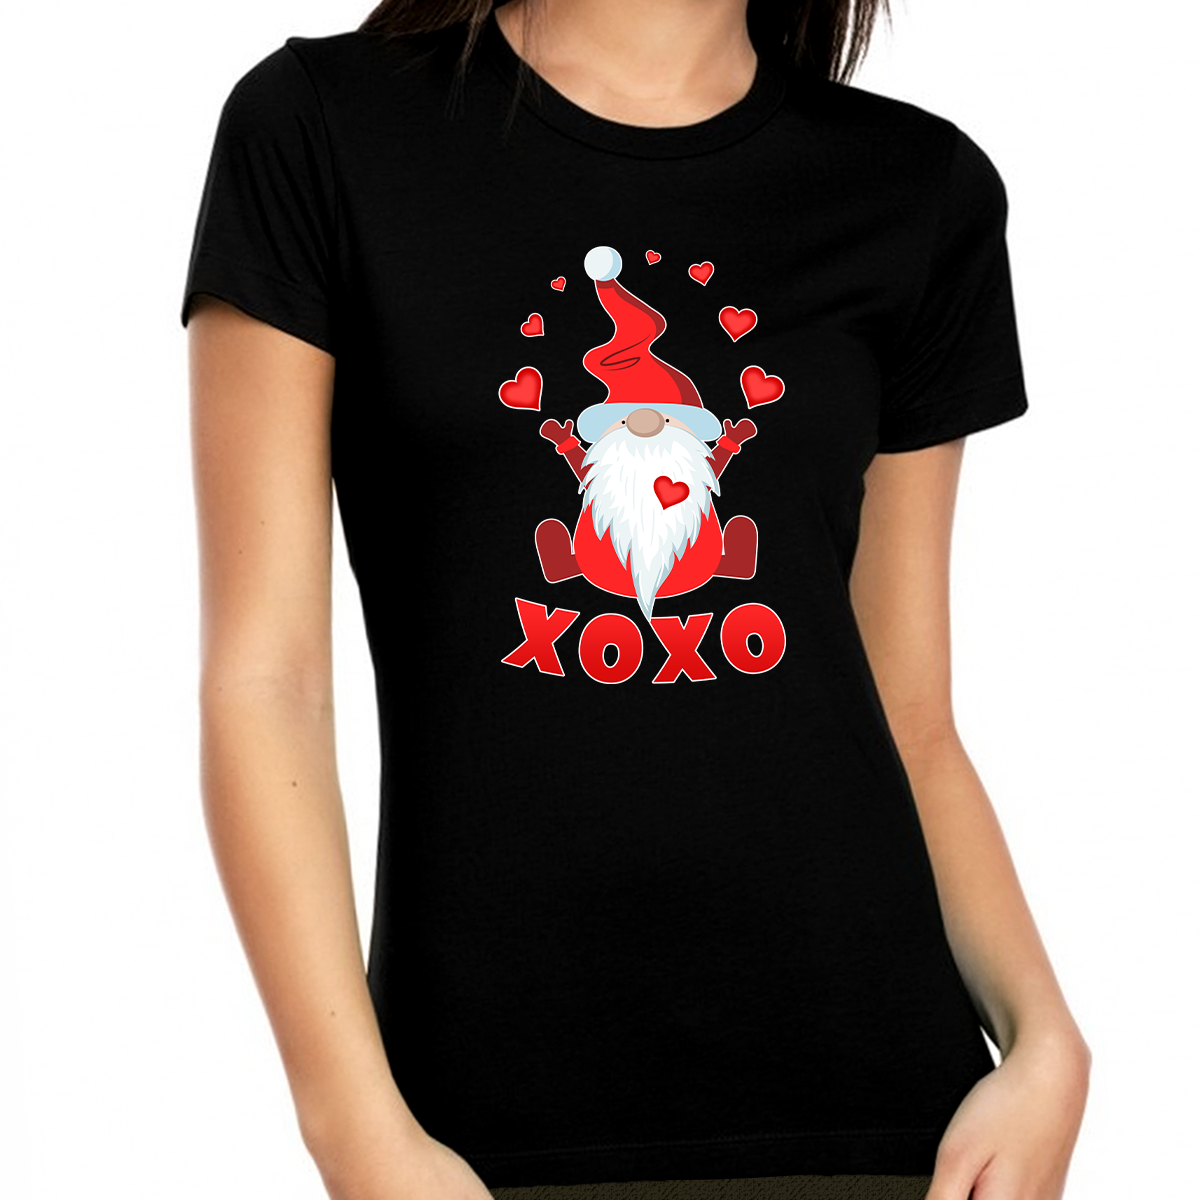 XOXO Valentine Shirts for Women Love Gnome Cute Valentine Shirt Valentines Day Gifts for Her